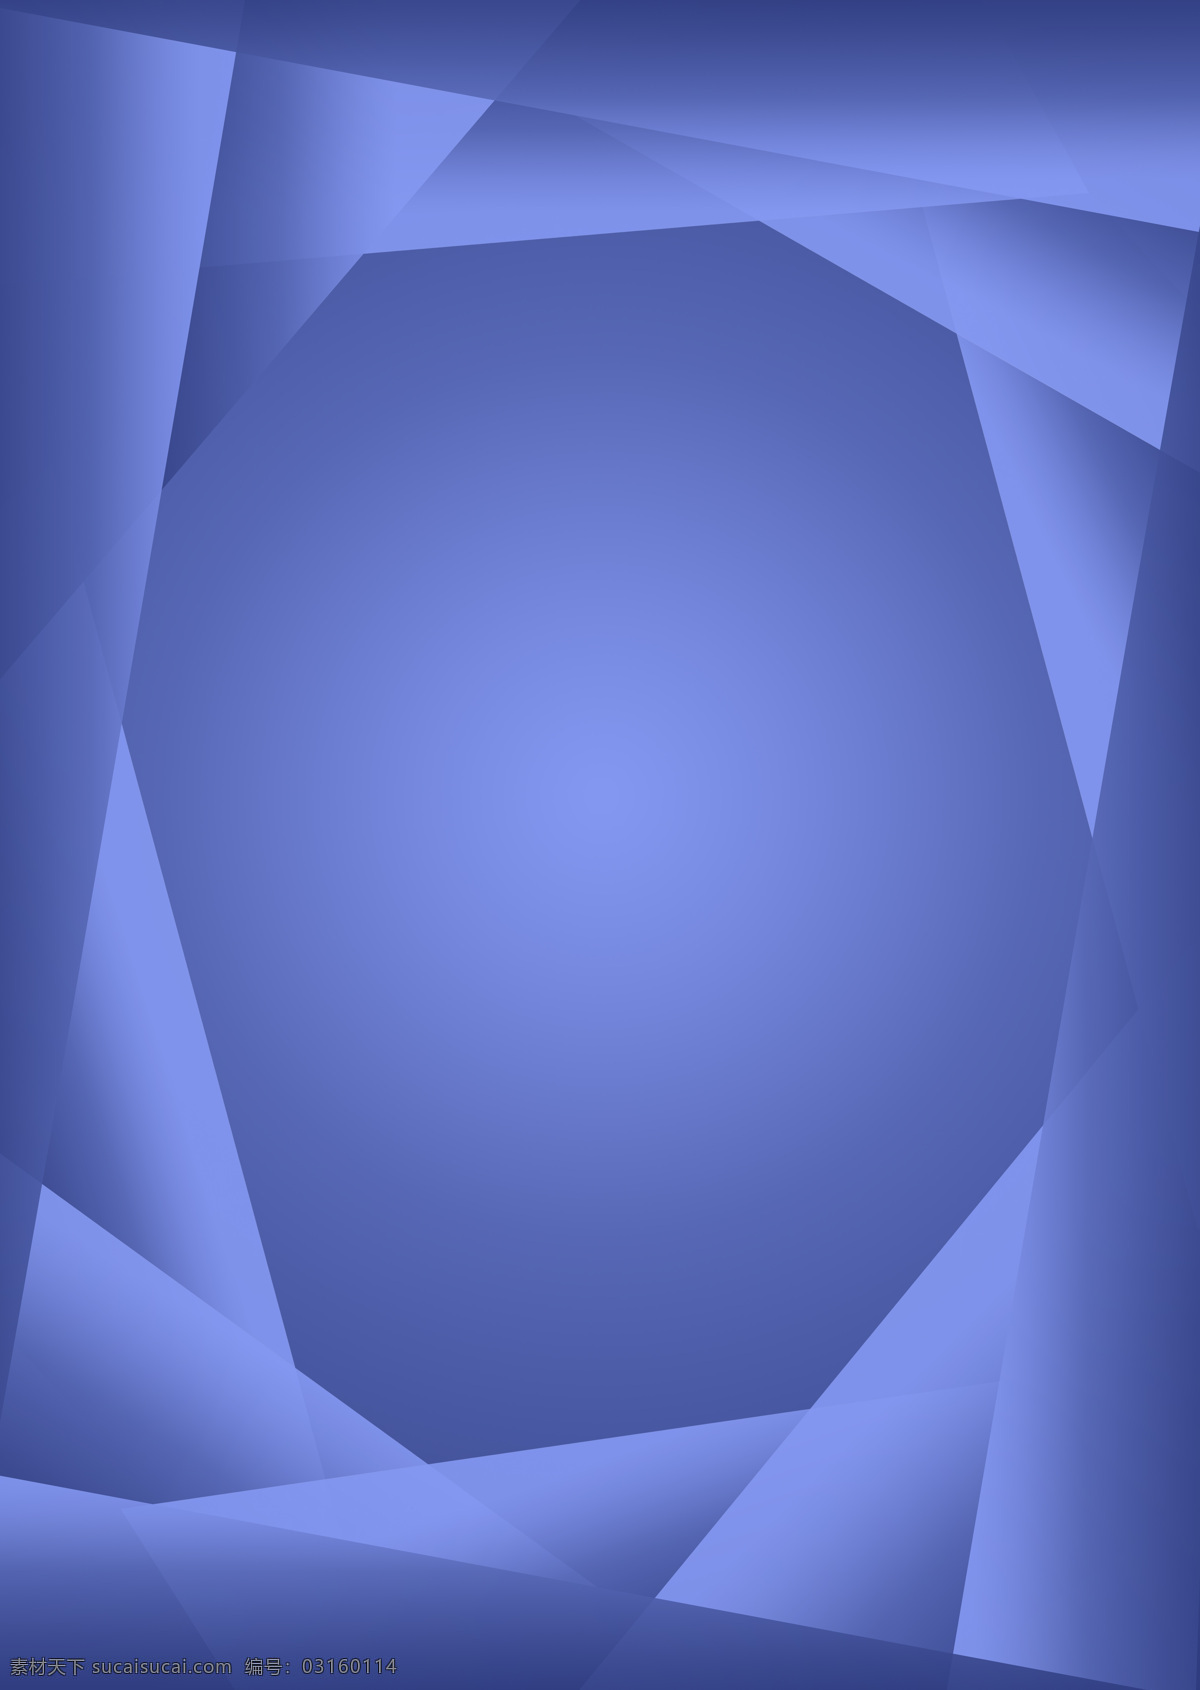 几何背景图 几何 三角形 正方形 渐变 蓝色 组合 拼接 背景图 ps2018 平面设计 简约 位图 钢笔 海报 宣传 原创 元素 暗色 旋转 集中